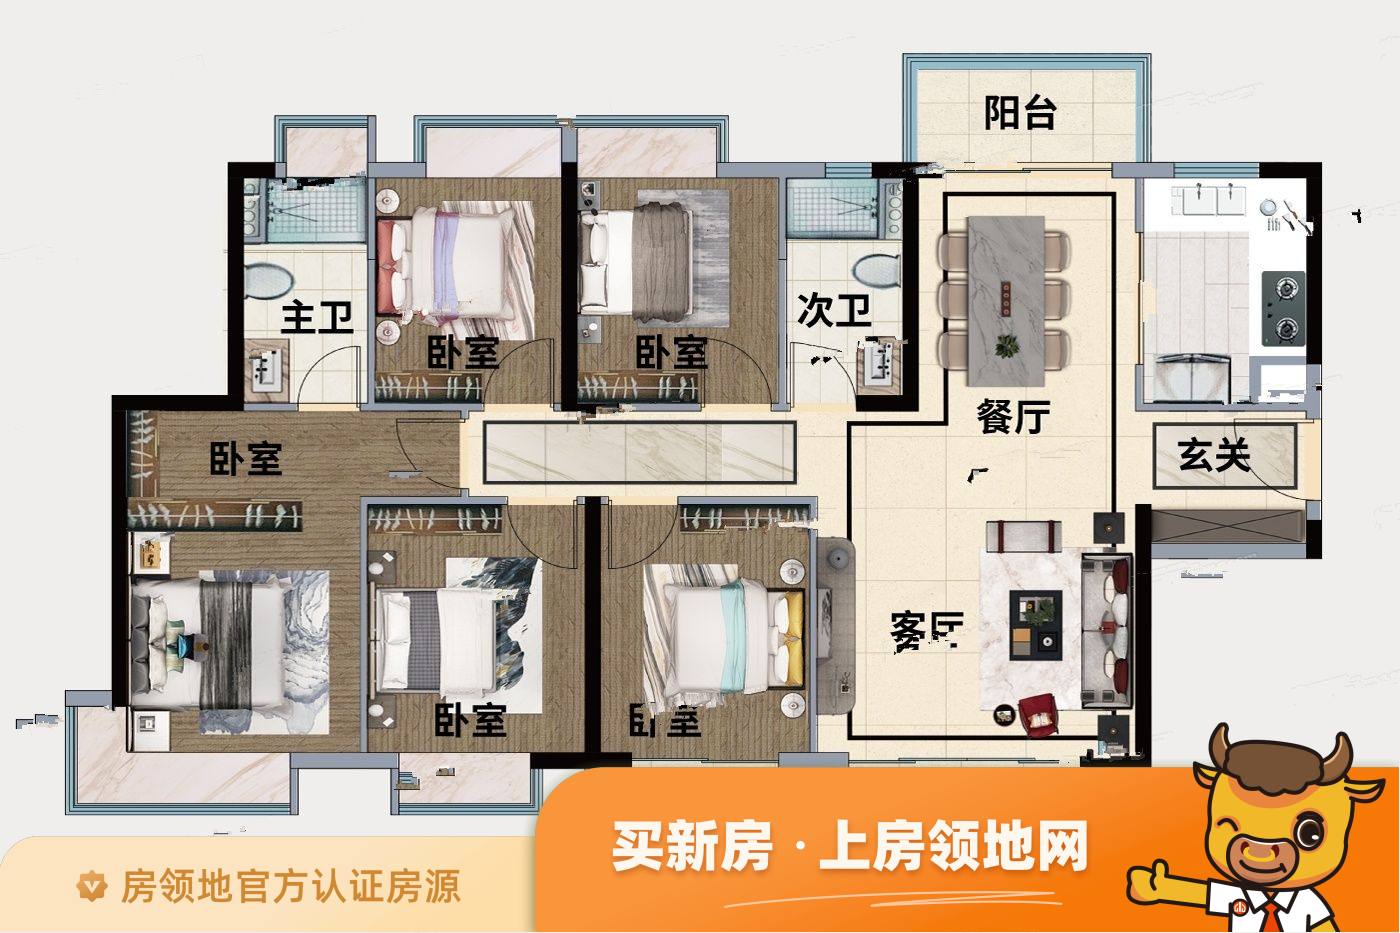 苏州凤凰文化广场公寓户型图5室2厅2卫